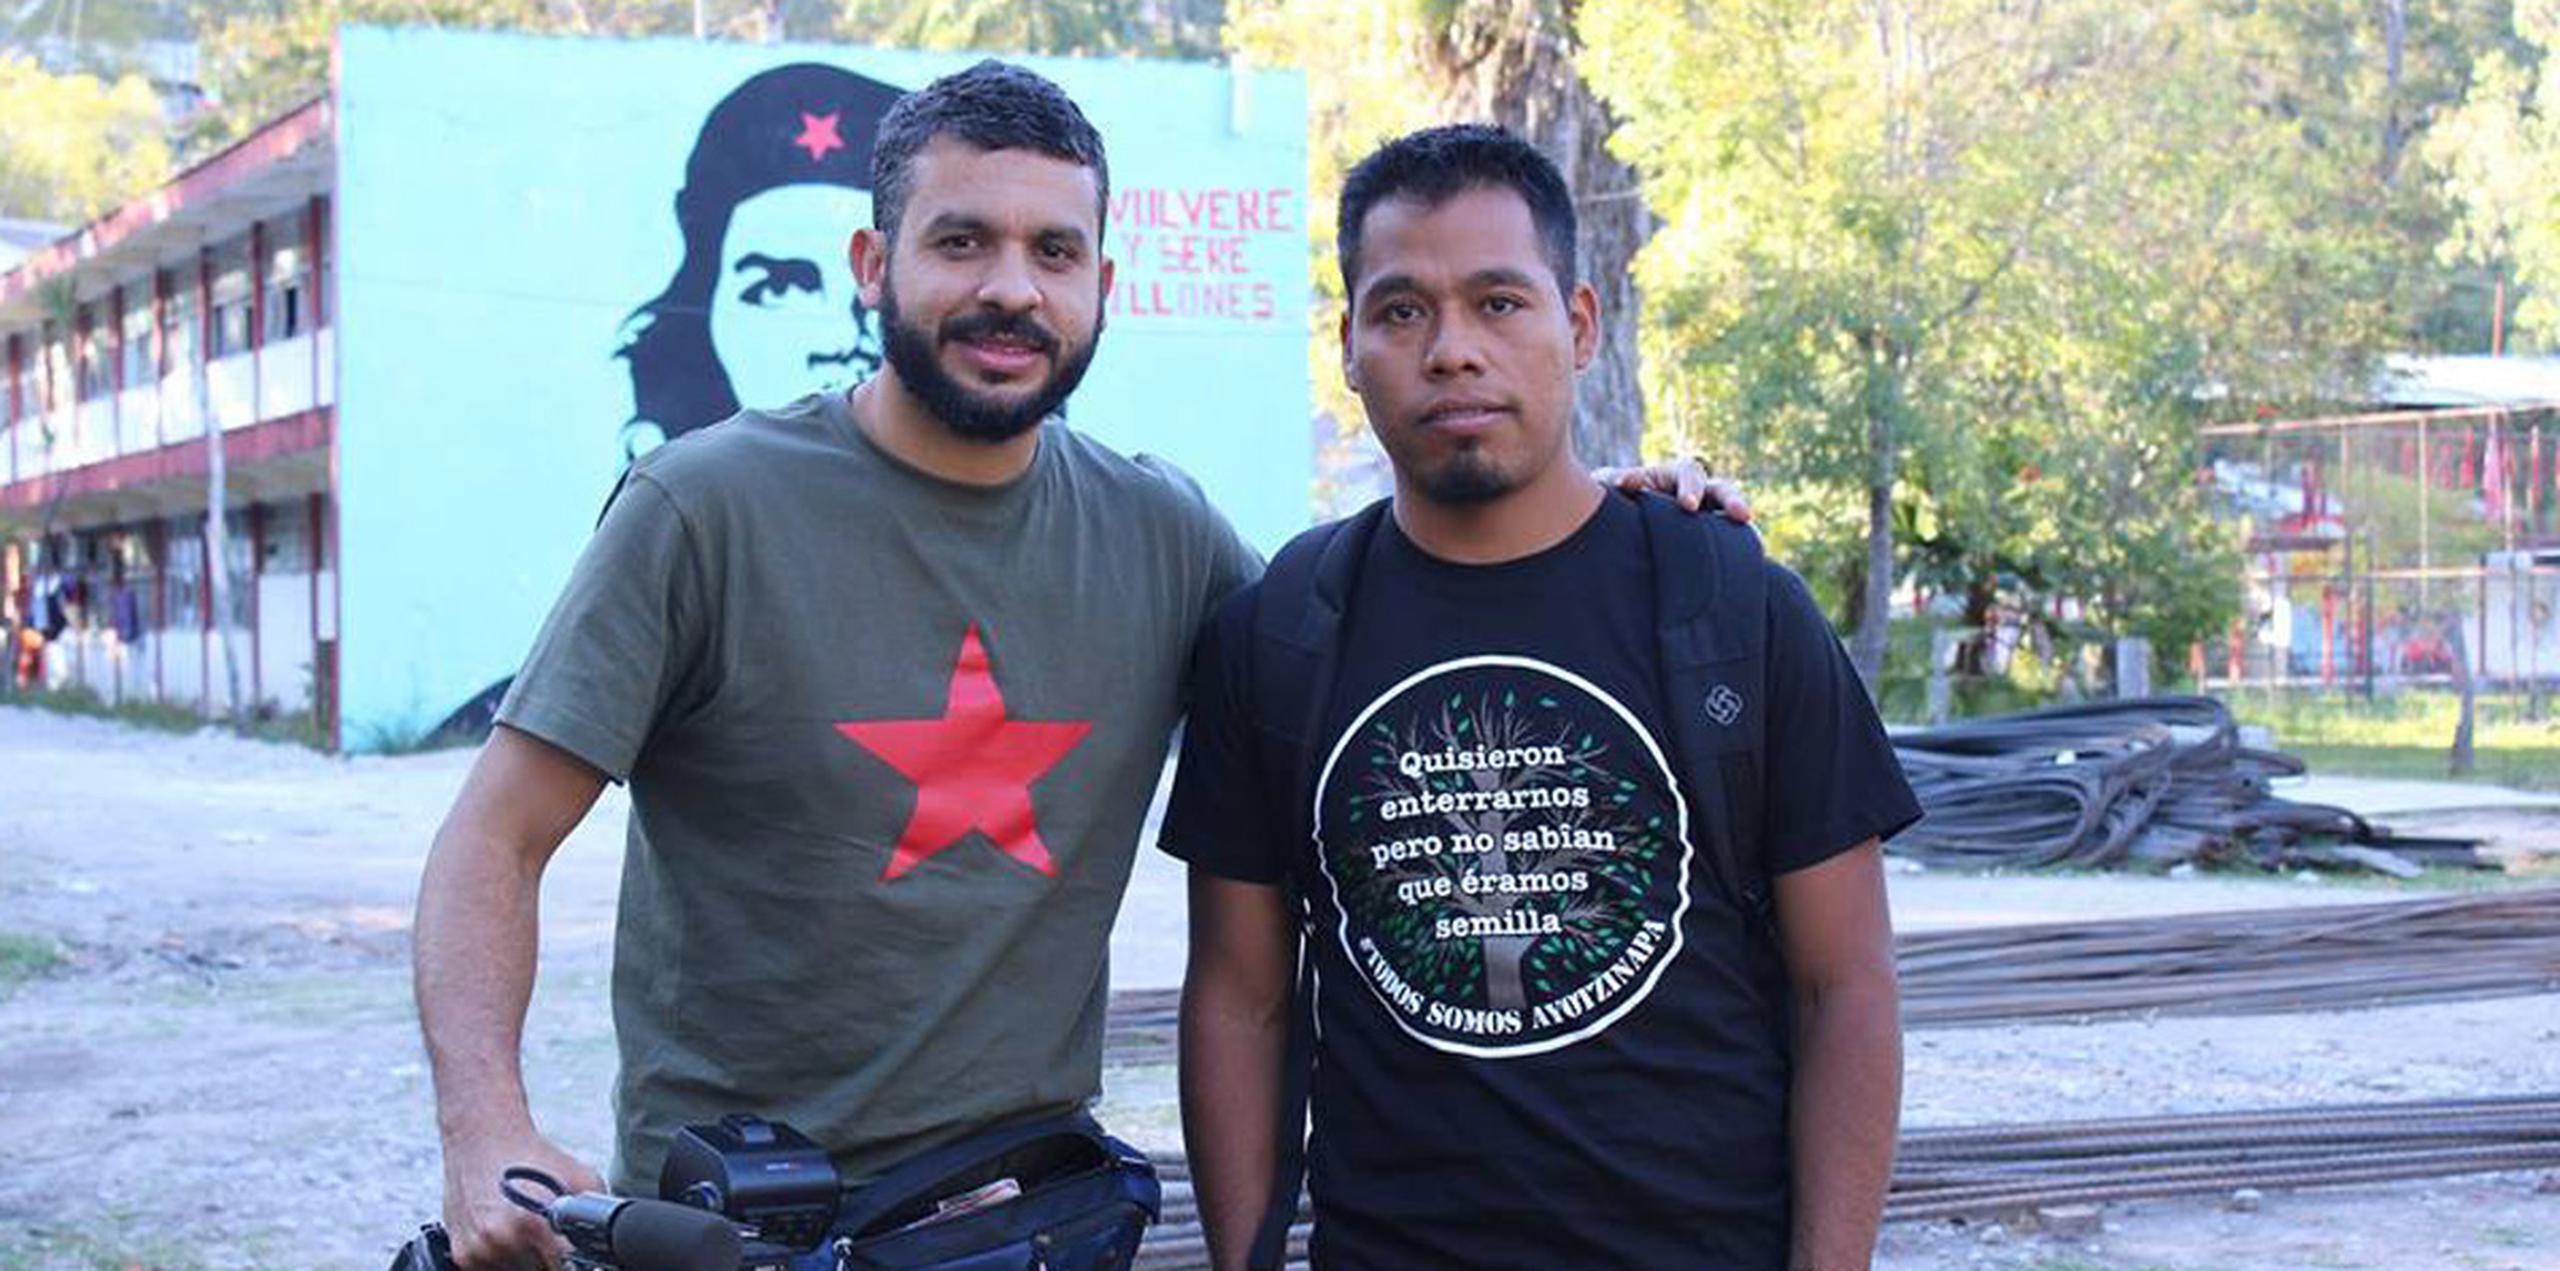 El documentalista Tito Román Rivera (izq.) estará presente en las proyecciones de "Ayotzinapa en mí" para dialogar con el público. (Suministrada)